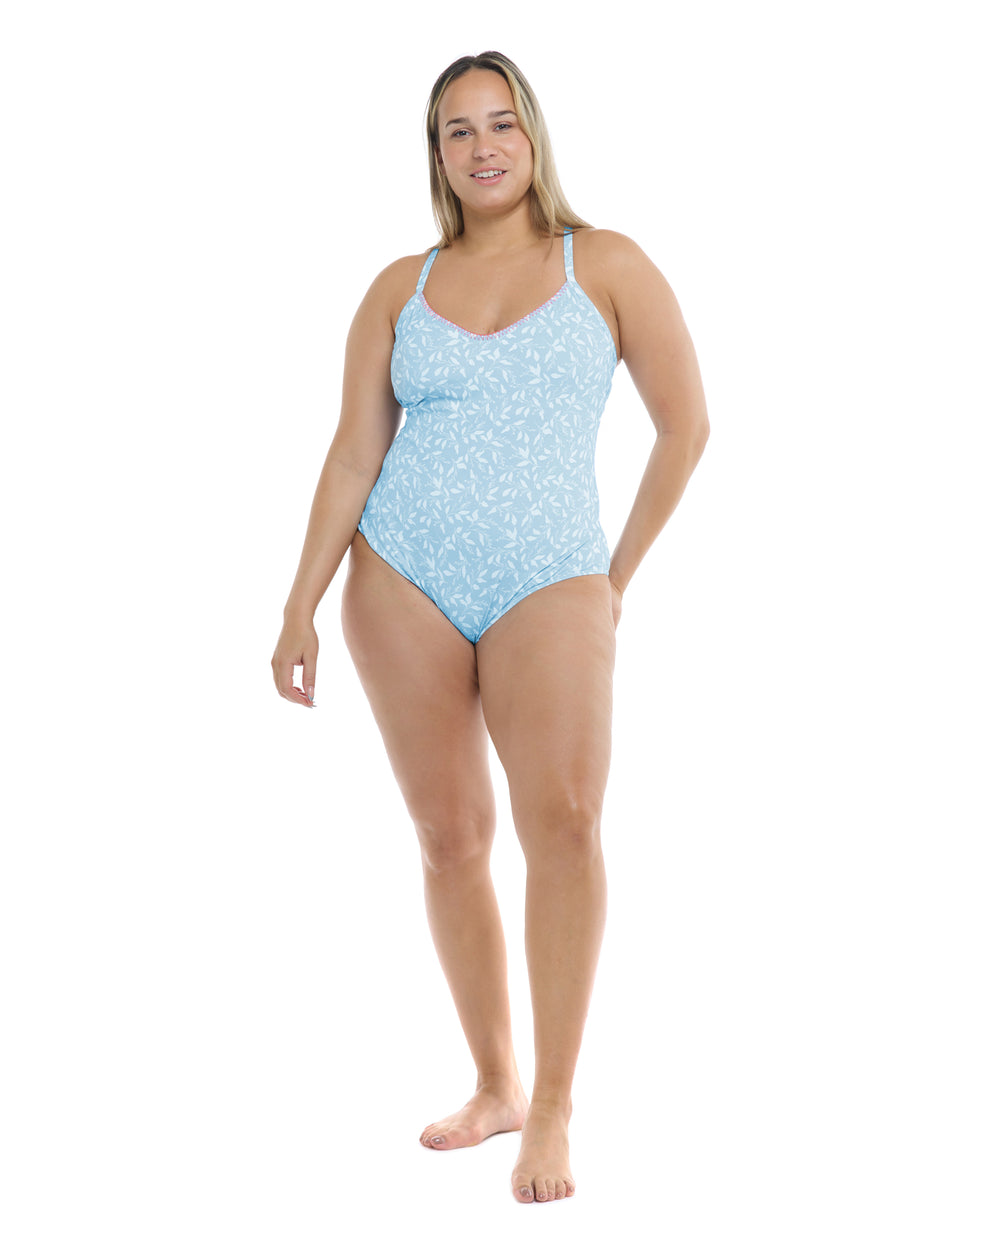 Flowery Skies Sandbar Plus Size One-Piece Swimsuit - Baby Blue